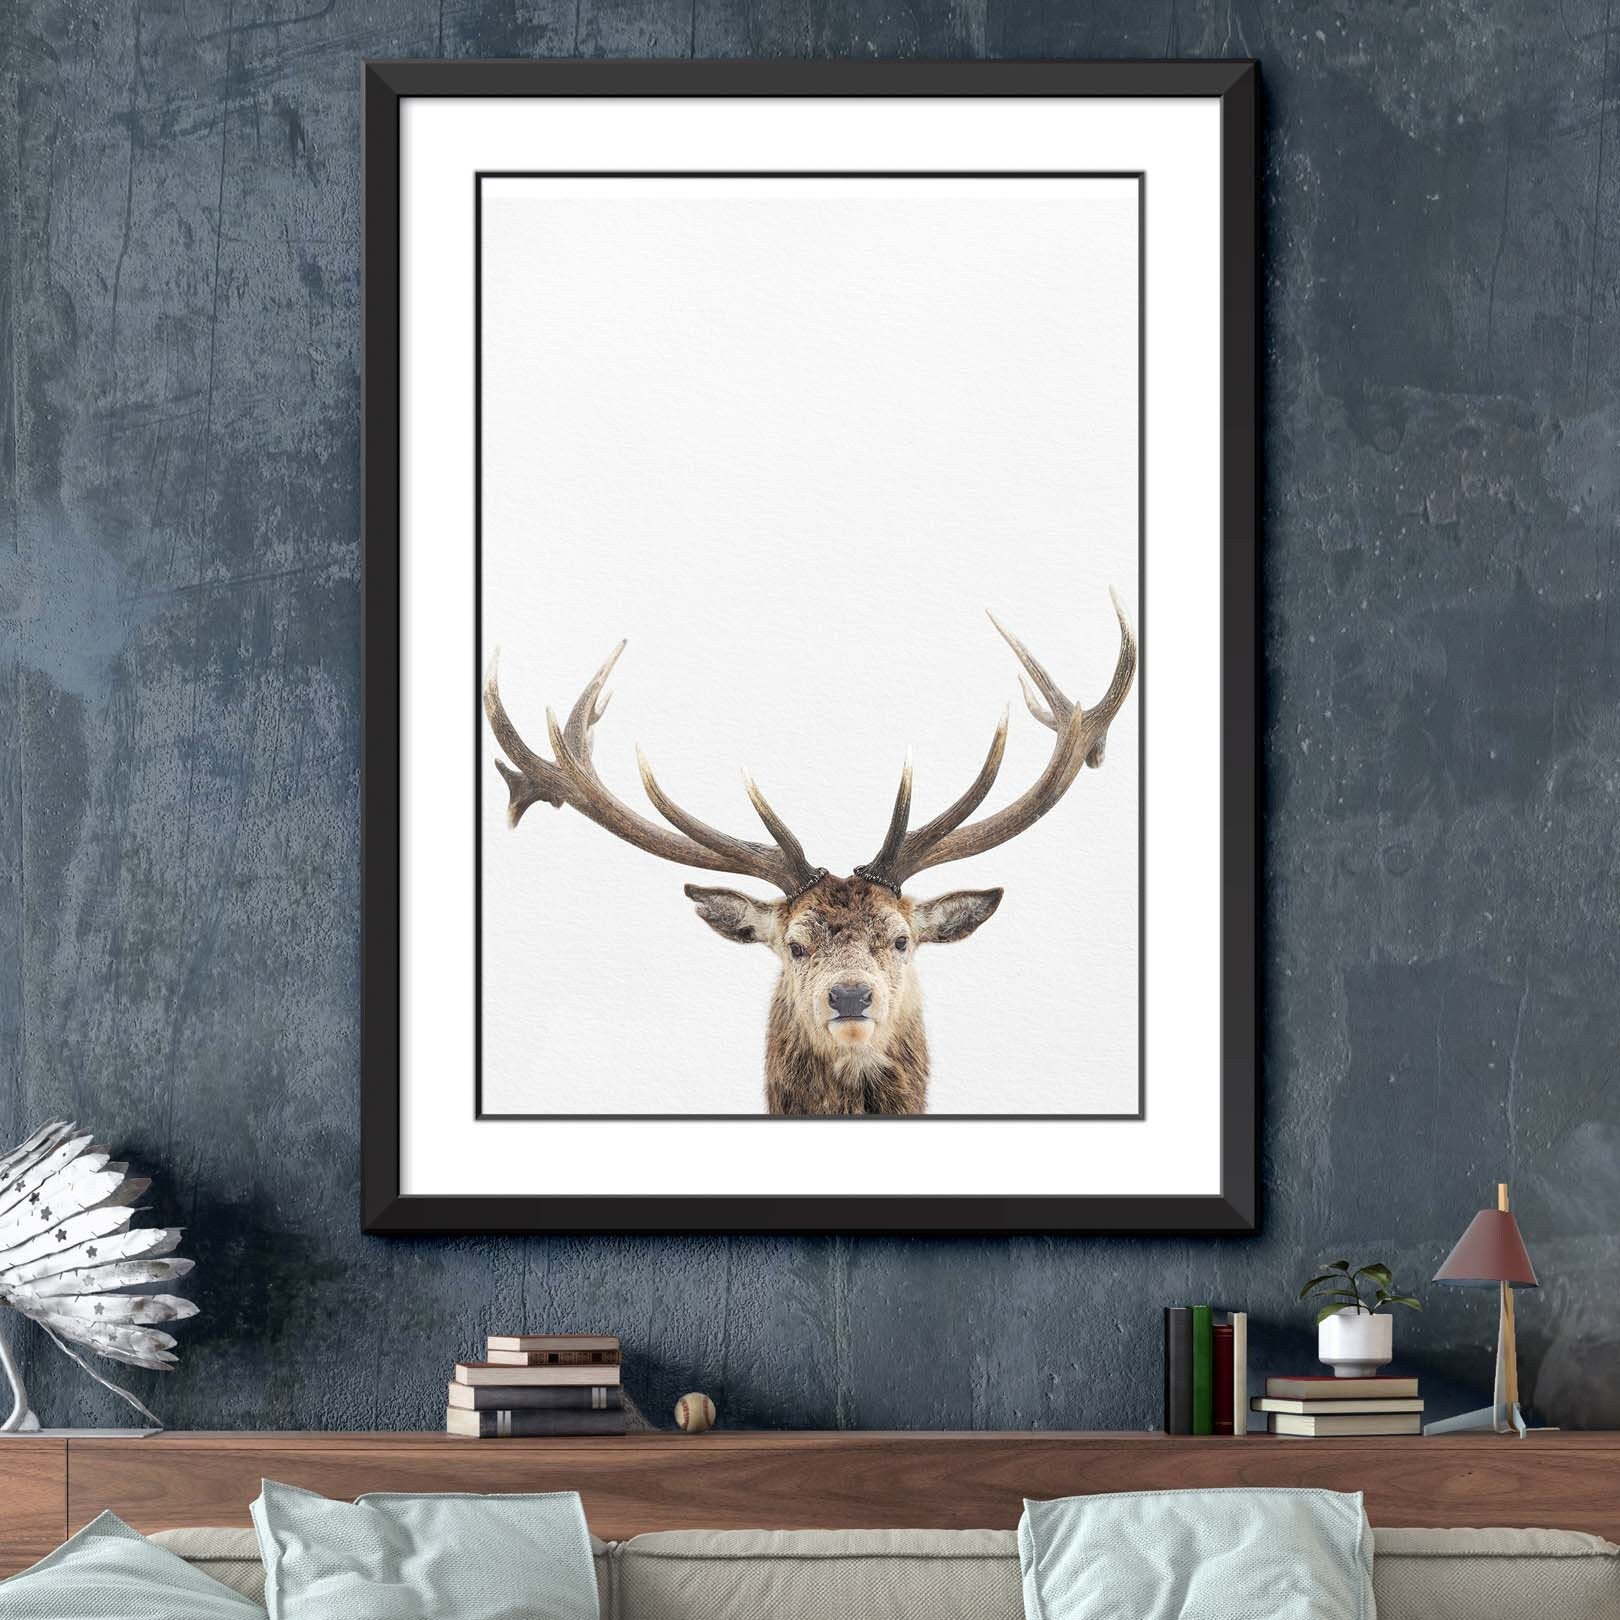 Deer Print, Deer Wall Art, Deer Decor, Living Room Art, Farmhouse Wall Decor, Farmhouse Art, Deer Wall Decor